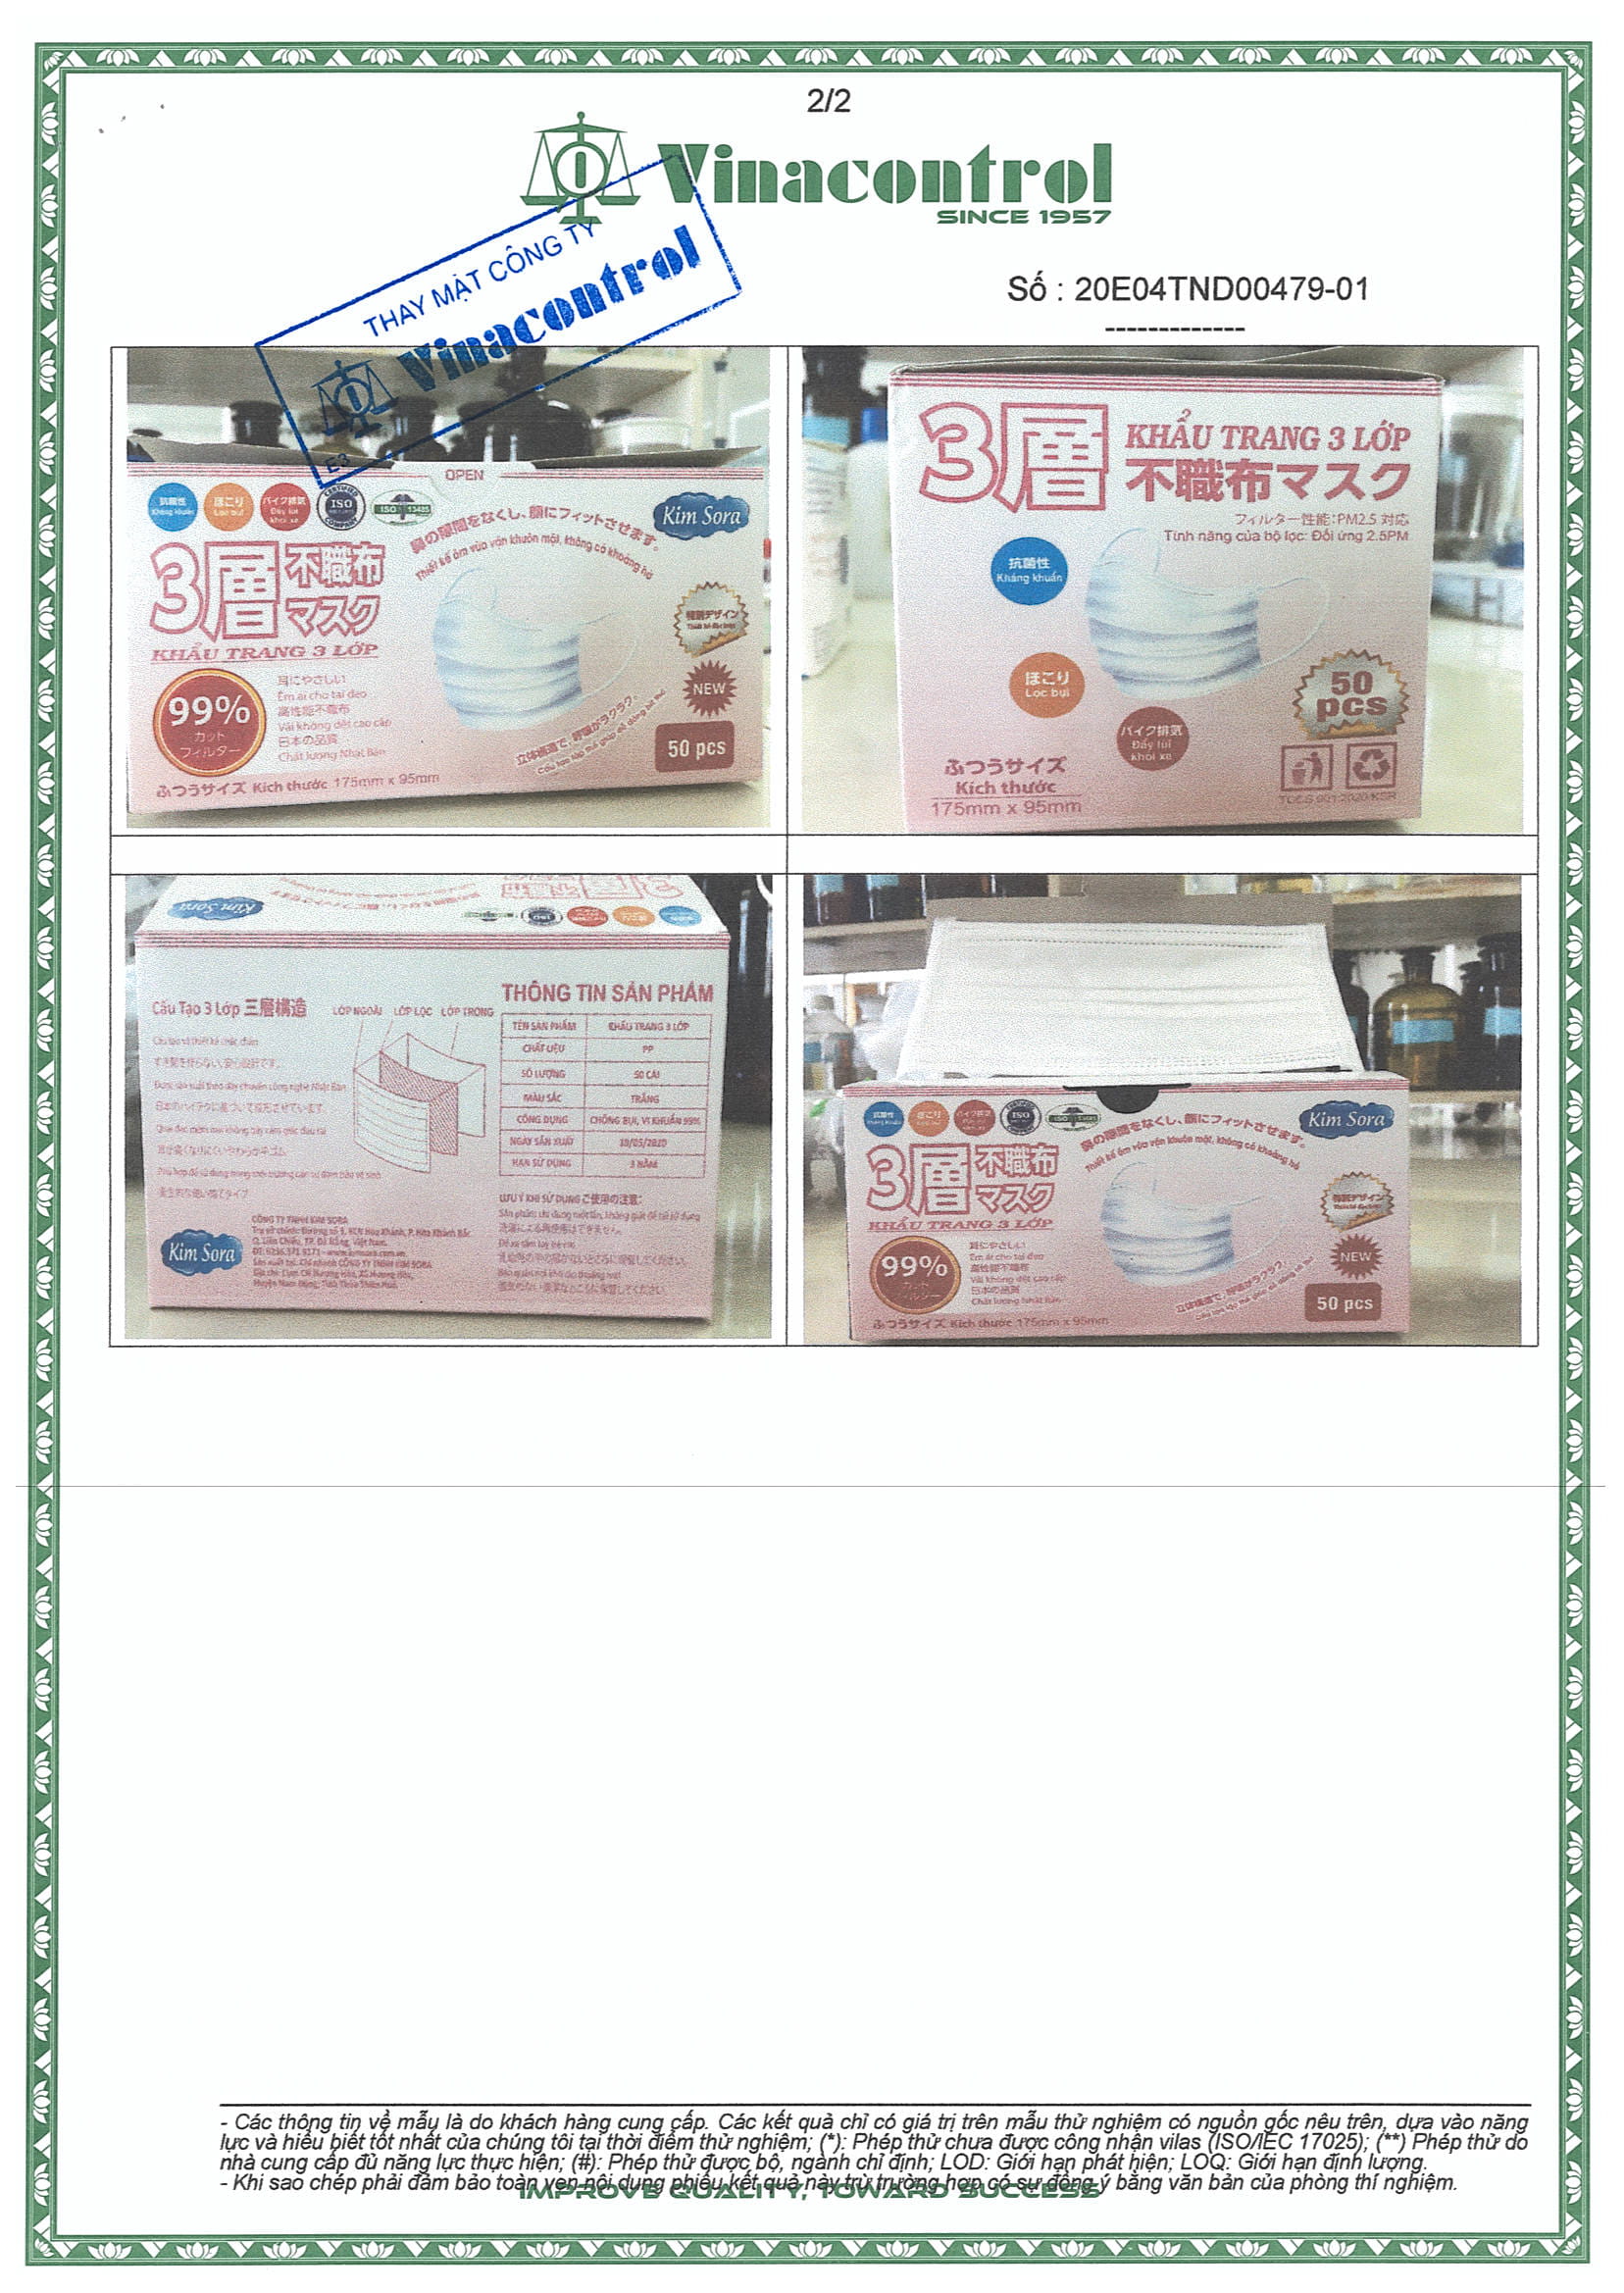 Khẩu trang y tế Kim Sora 3 lớp tiêu chuẩn Nhật Bản màu trắng hộp 50 chiếc